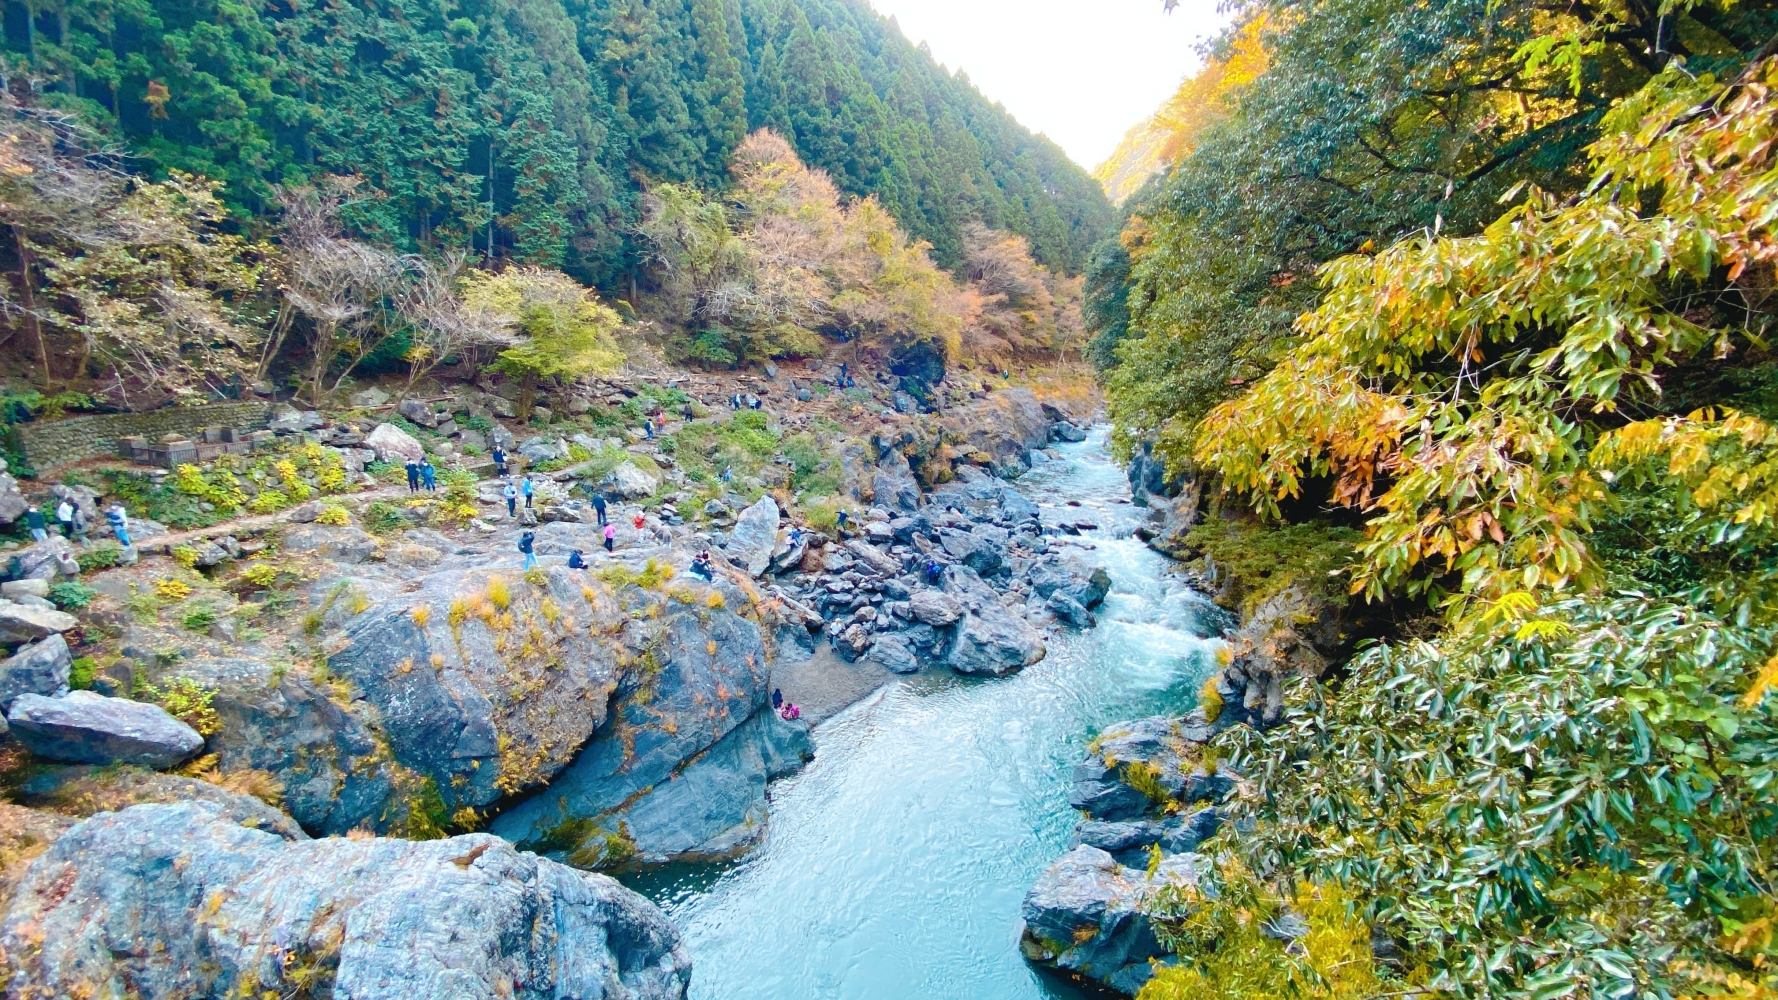 Tama River gushing through craggy rocks at Hatonosu Valley